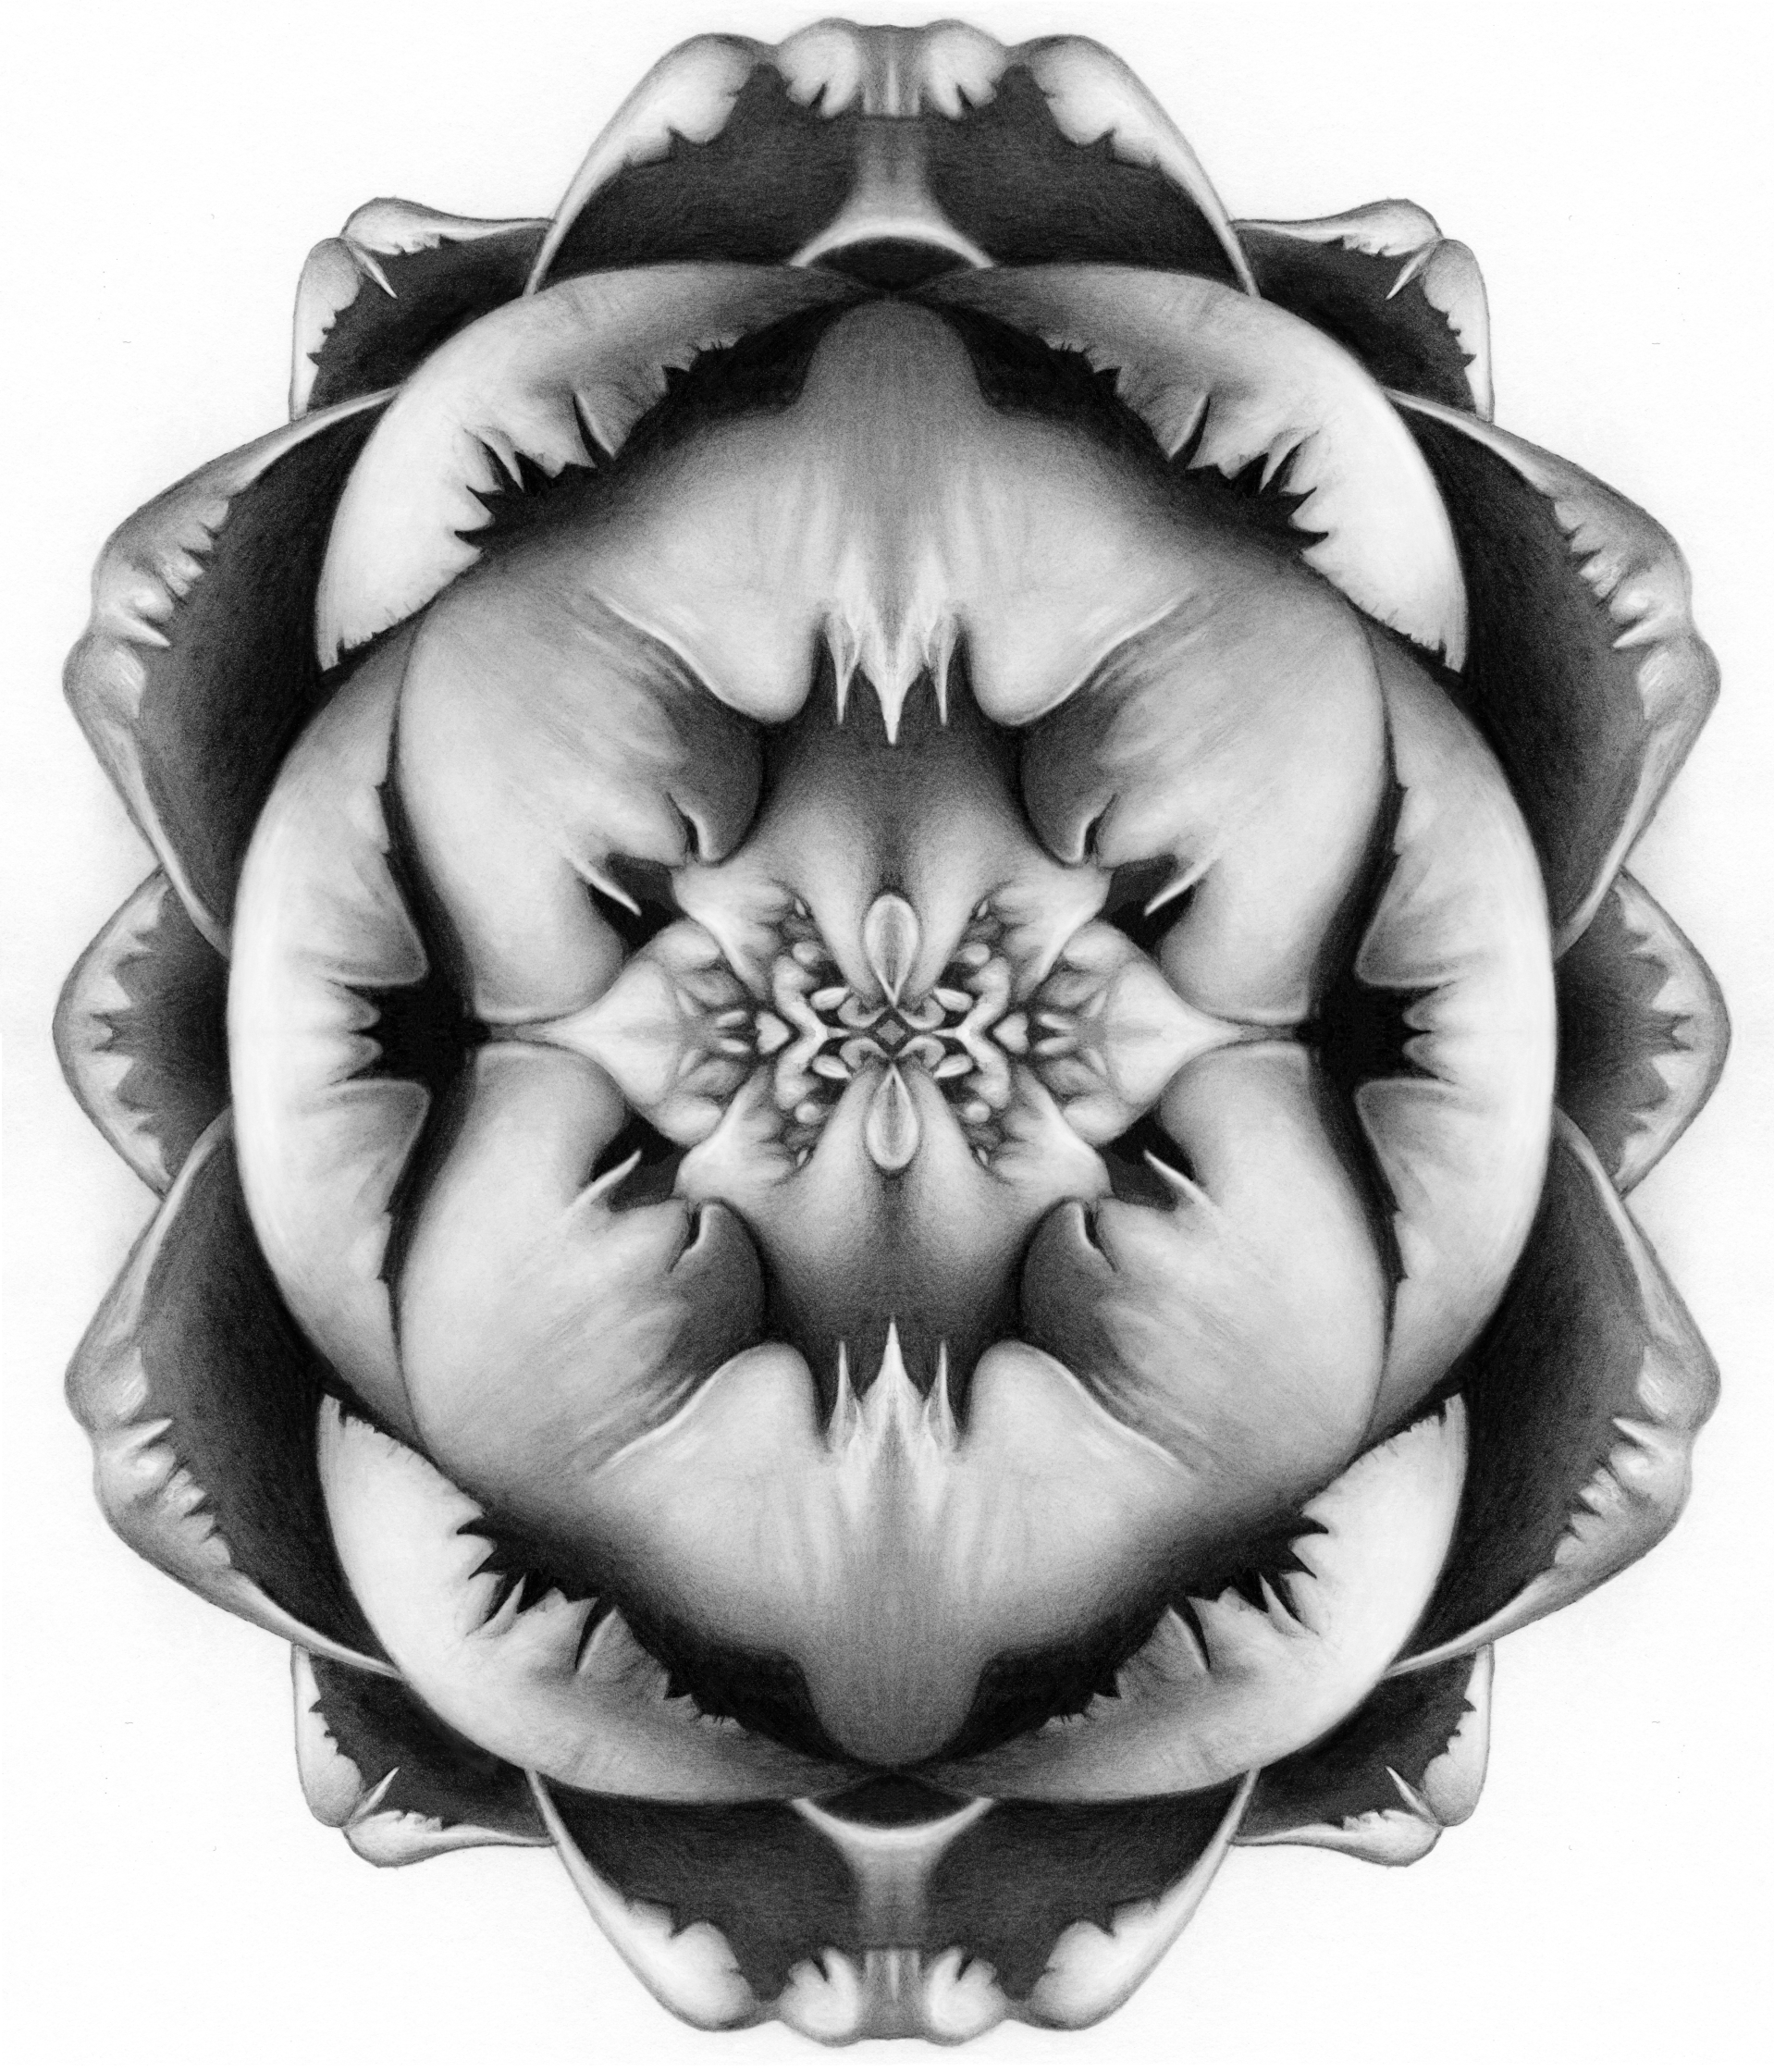 artichoke_symmetry.jpg